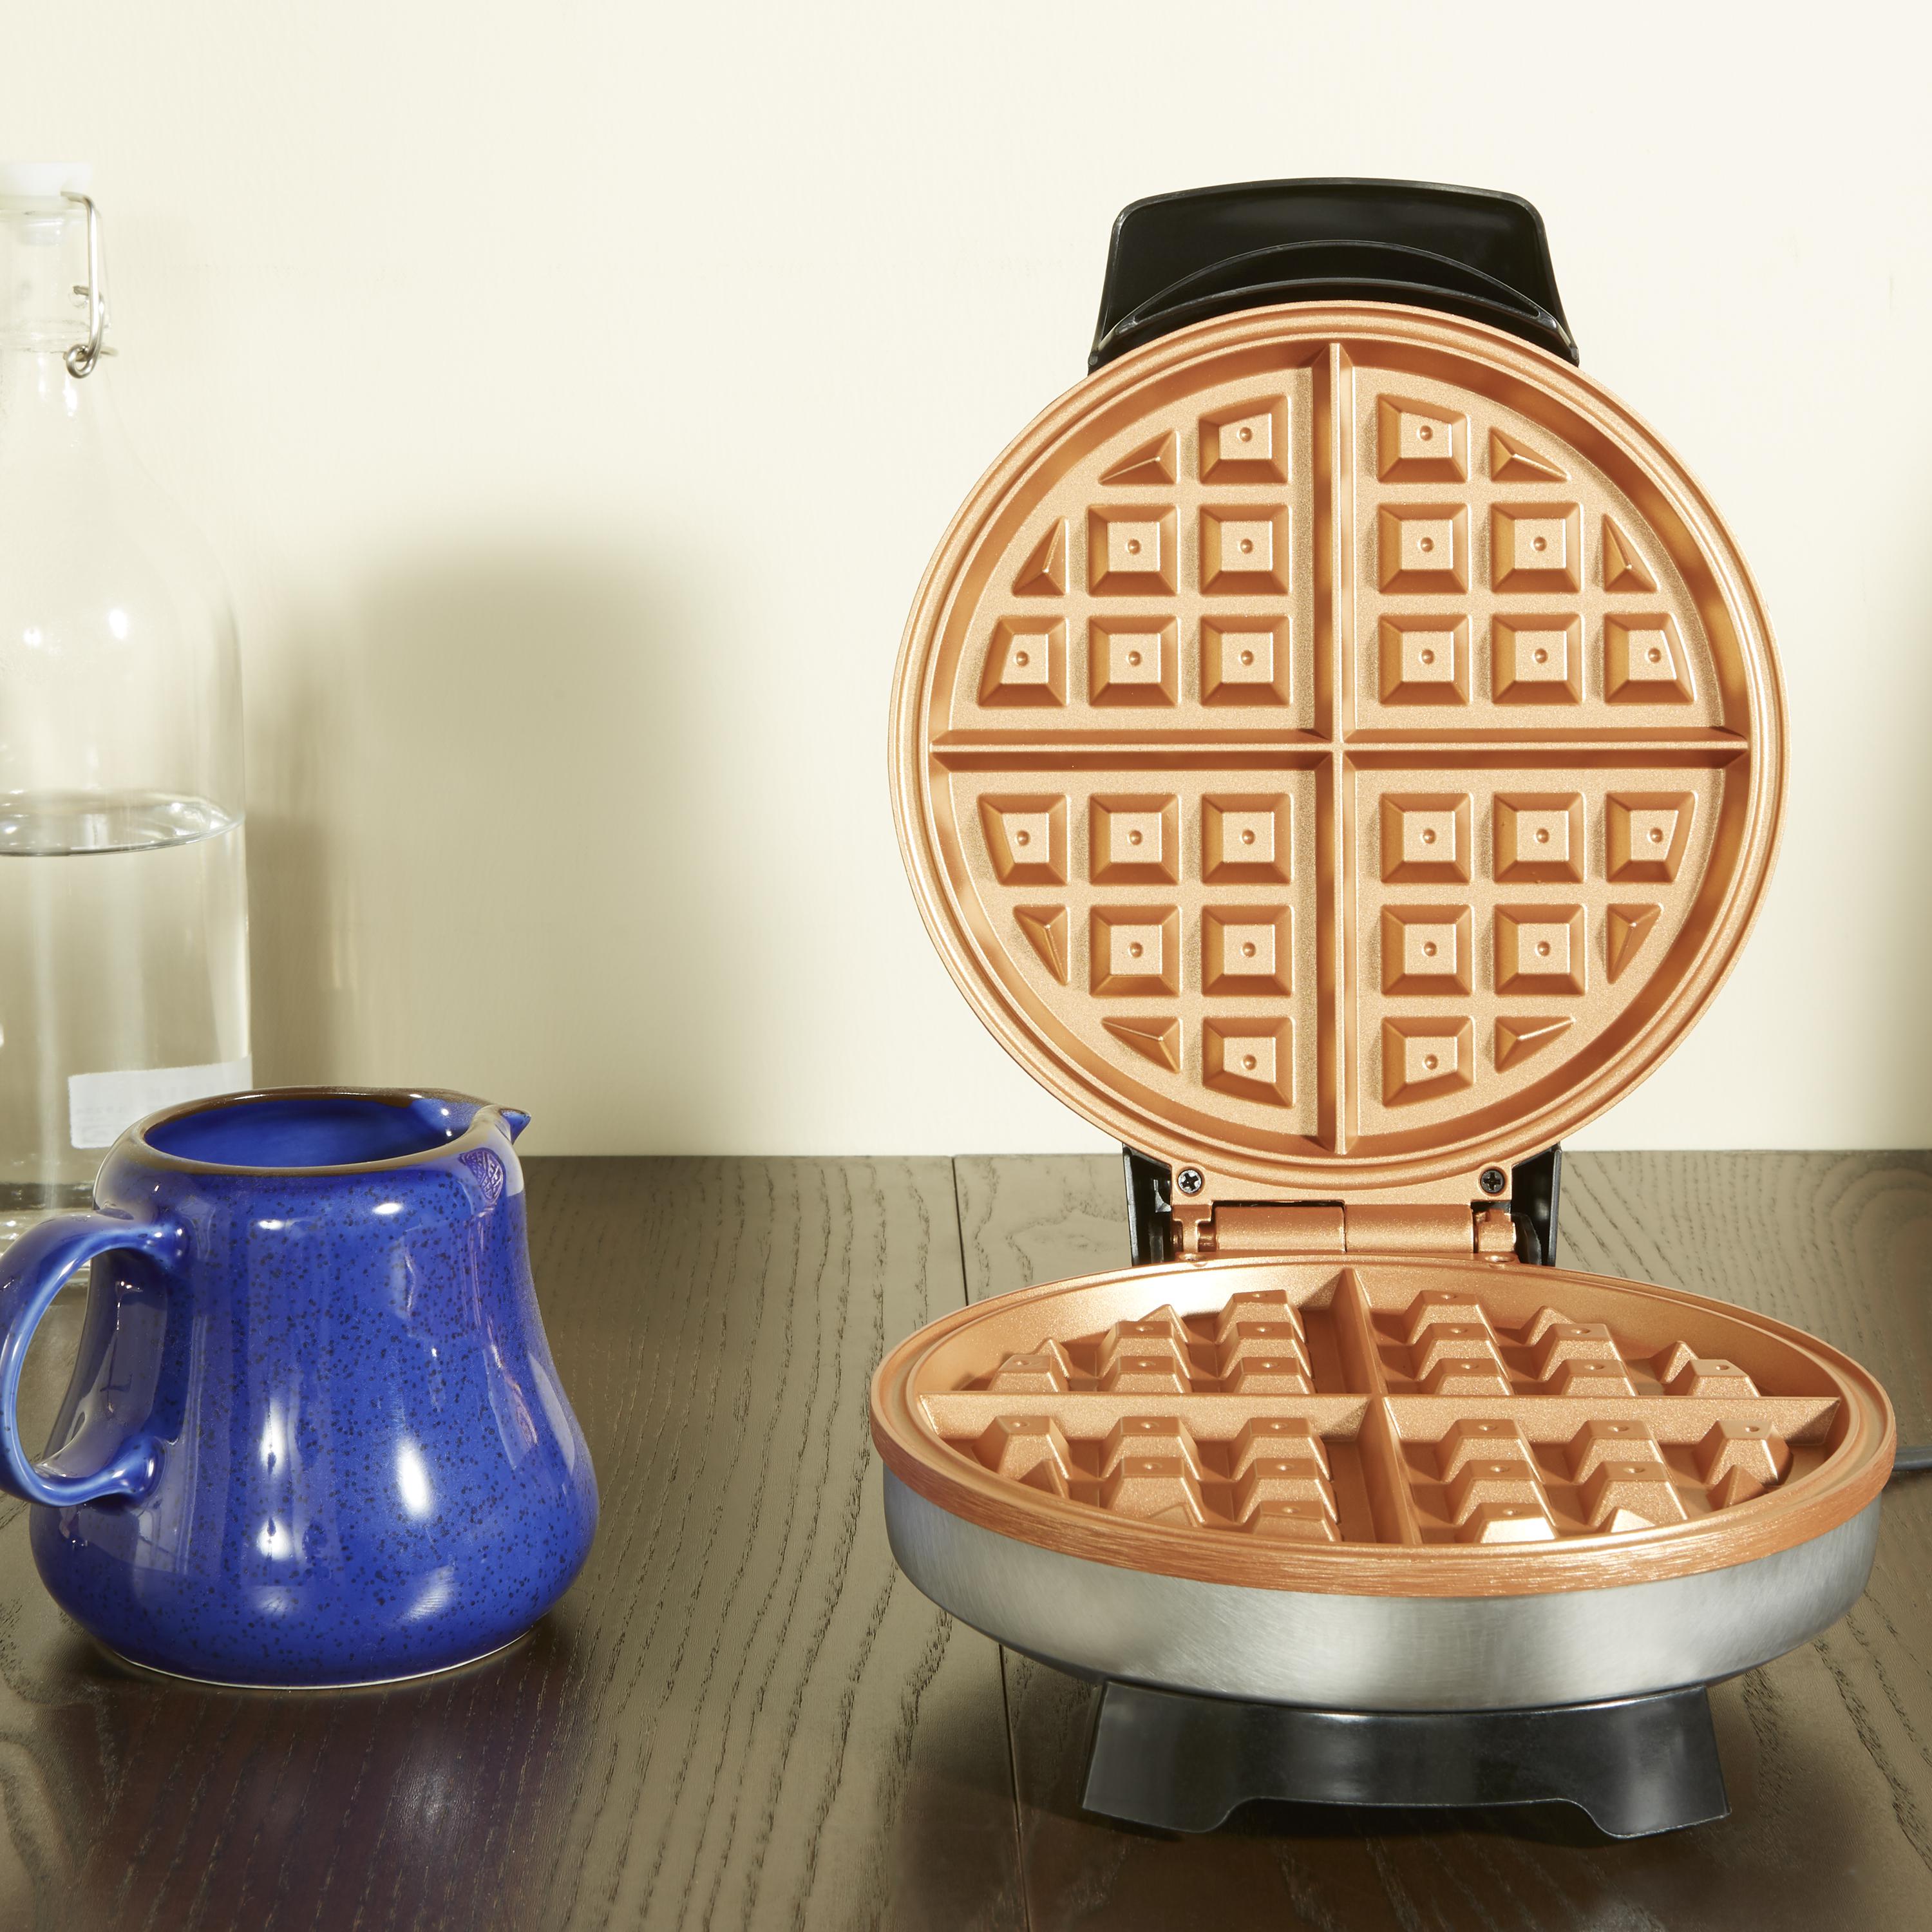 Farberware Copper Non-Stick Round Waffle Maker, New - 201796 - image 5 of 5